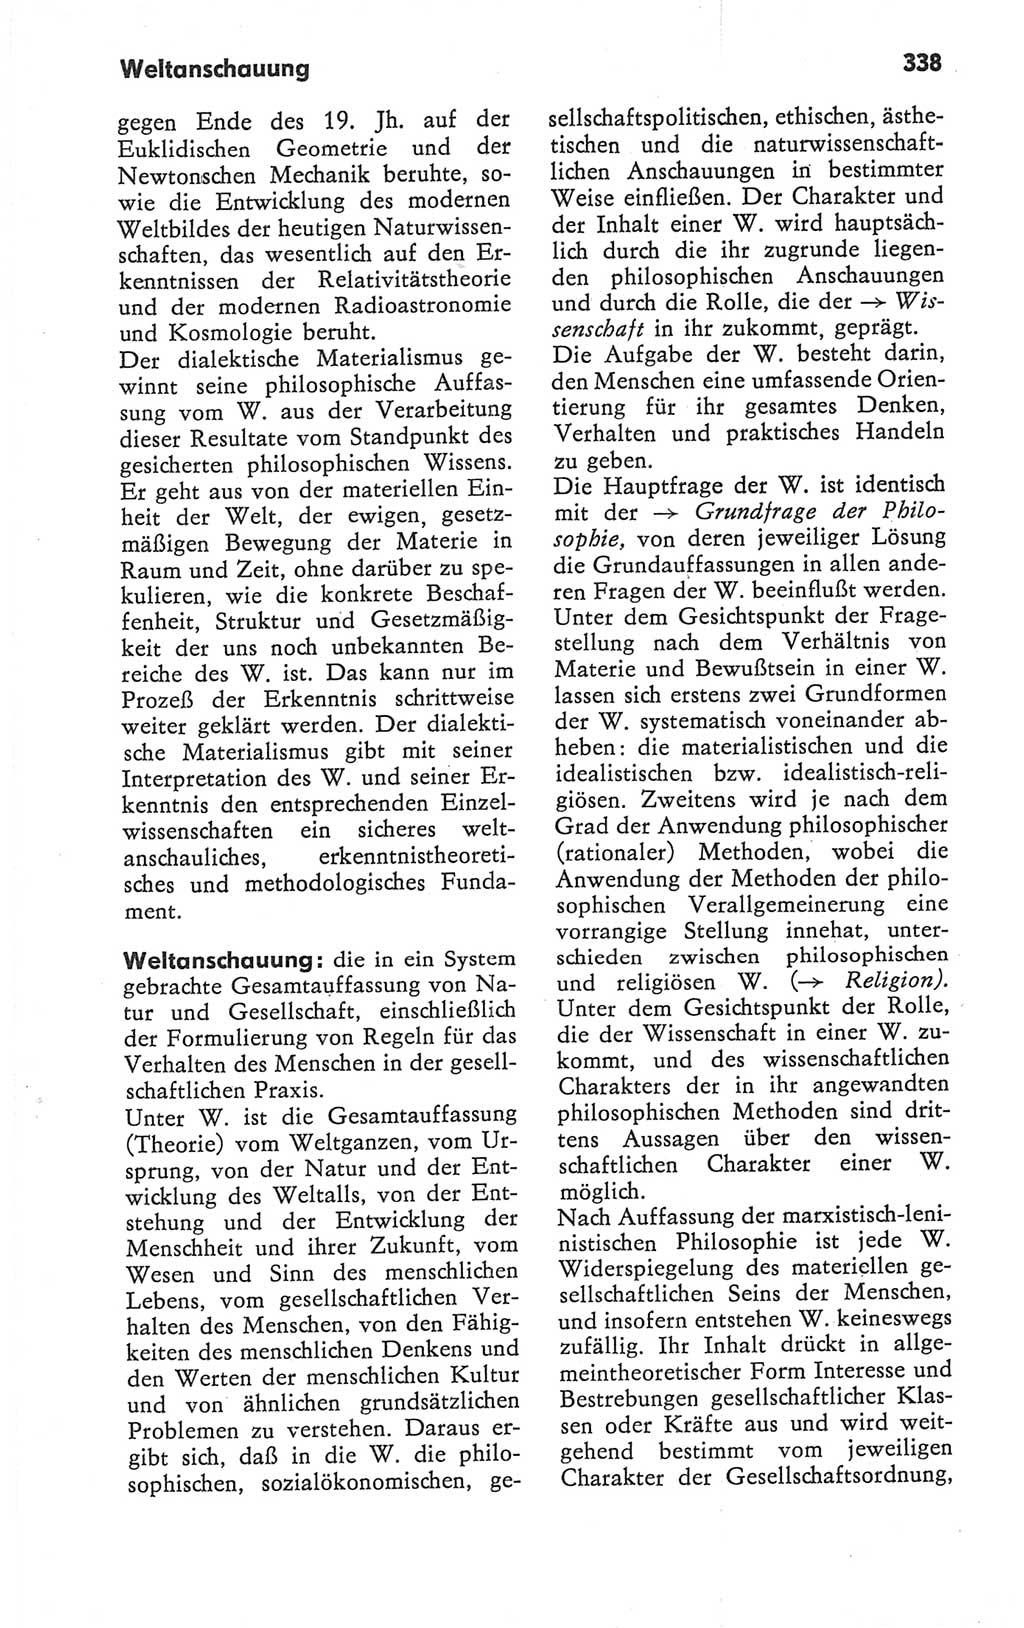 Kleines Wörterbuch der marxistisch-leninistischen Philosophie [Deutsche Demokratische Republik (DDR)] 1979, Seite 338 (Kl. Wb. ML Phil. DDR 1979, S. 338)